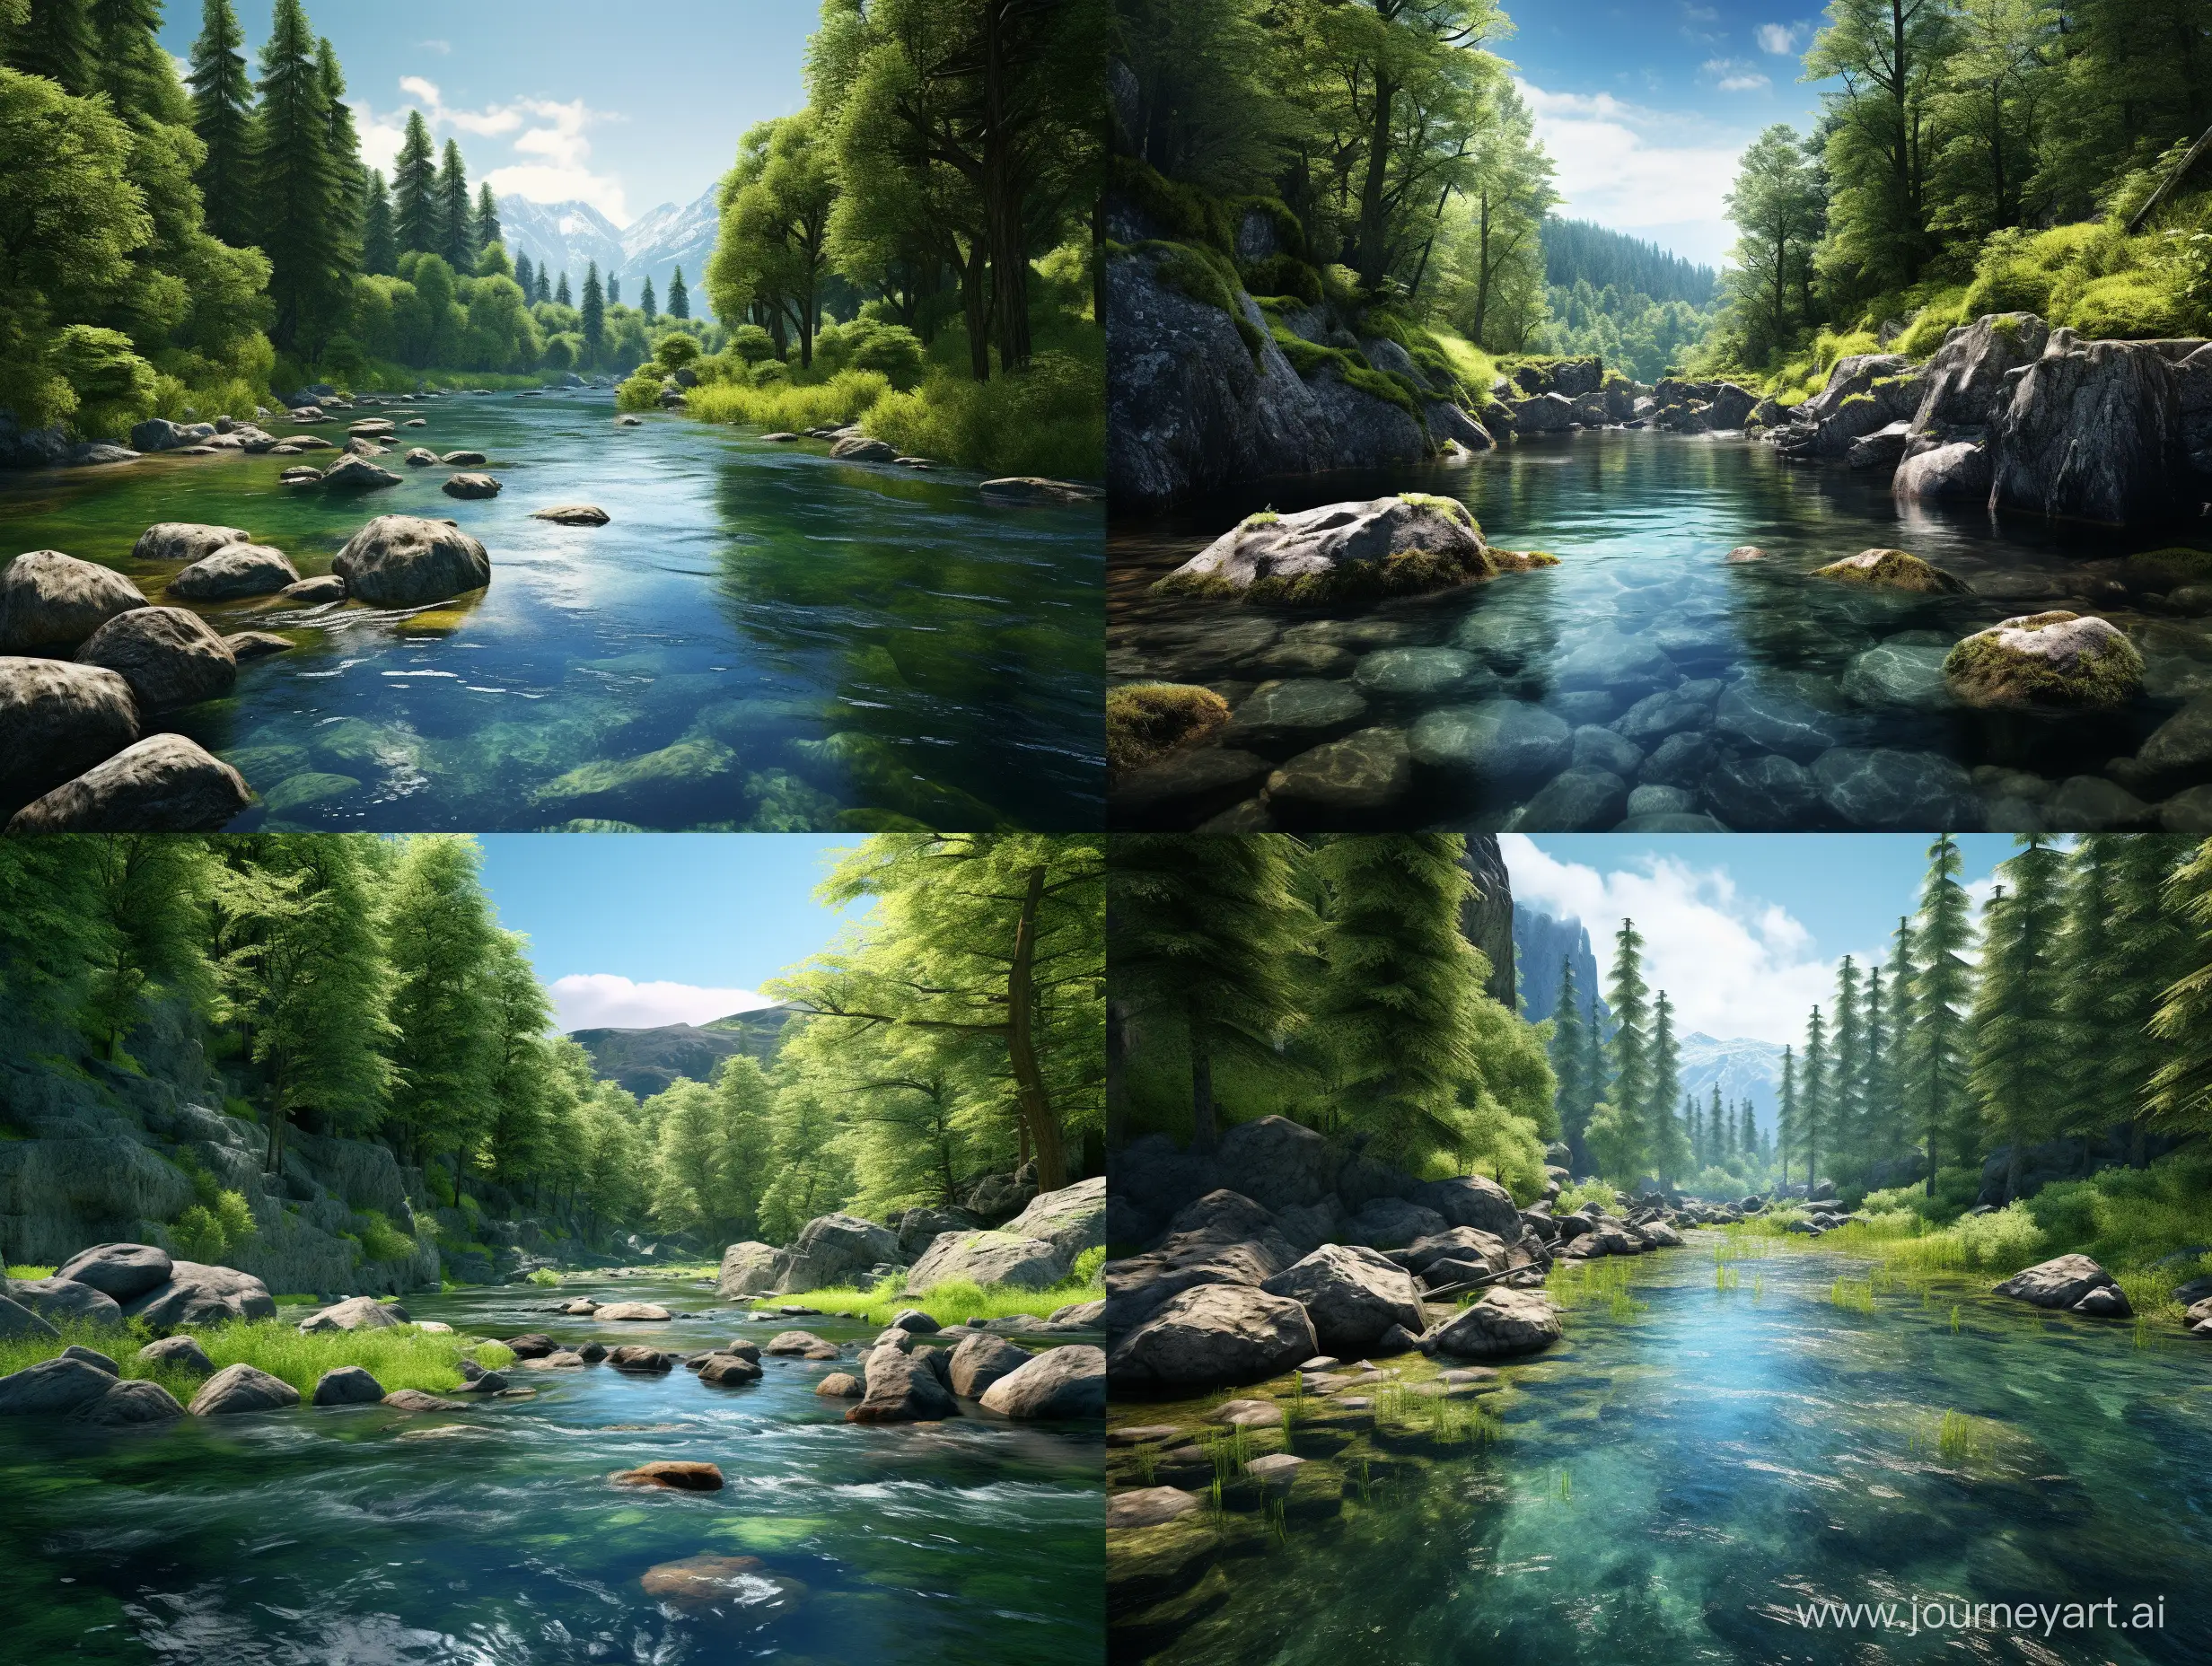 Vista panorámica cinematográfica y fotorealista de un río europeo con aguas claras y fondos rocosos en un bosque frondoso, en formato 16:9